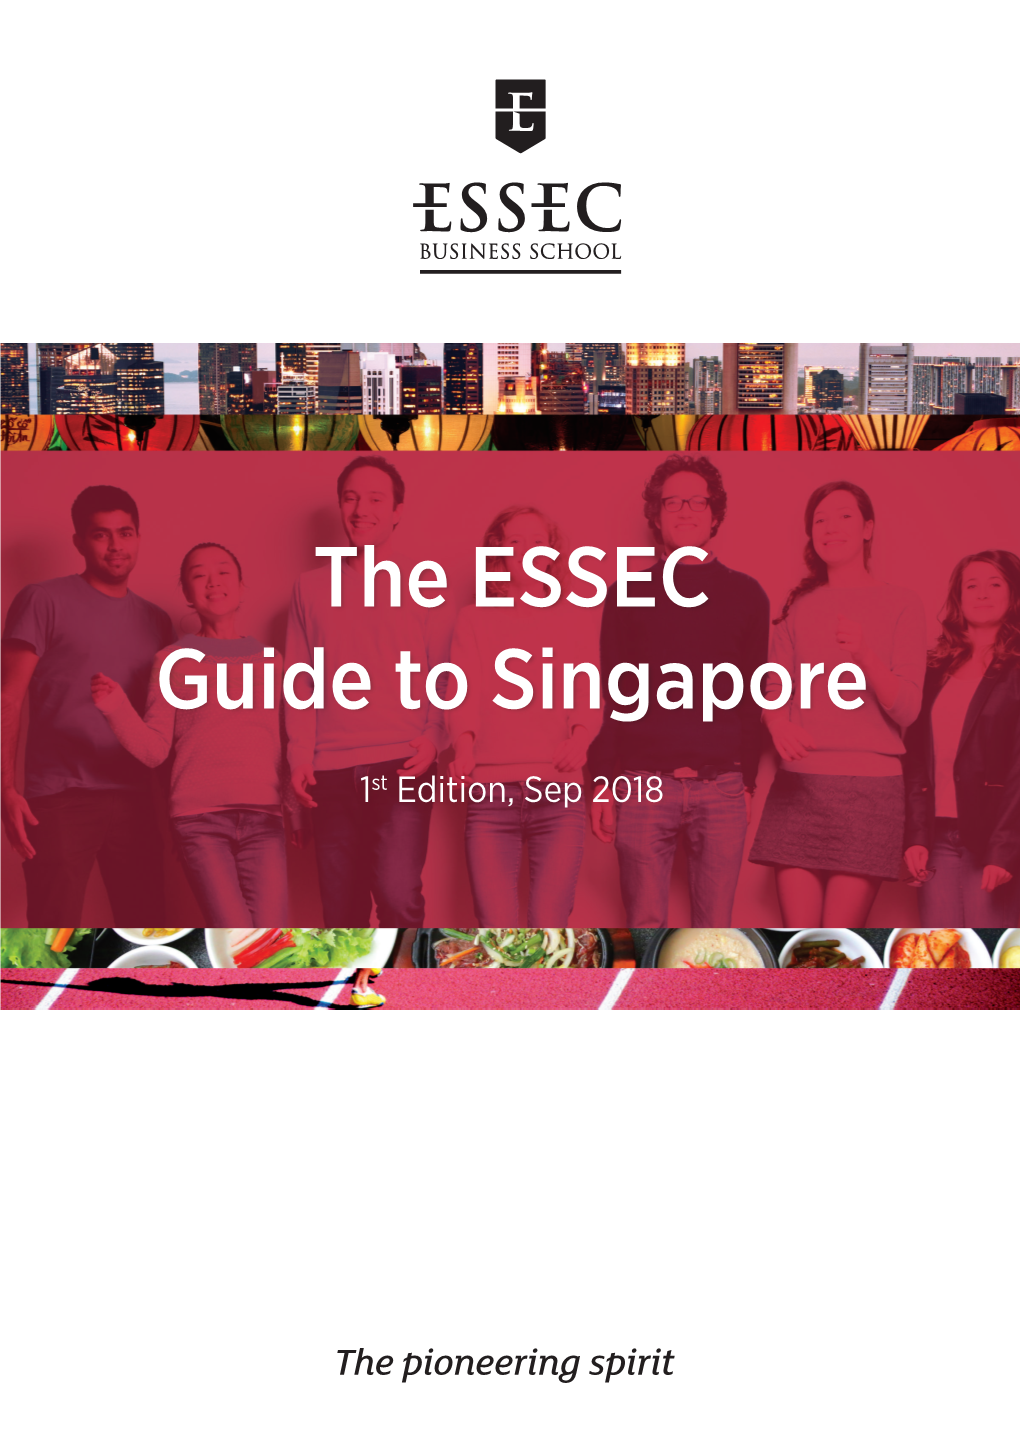 The ESSEC Guide to Singapore